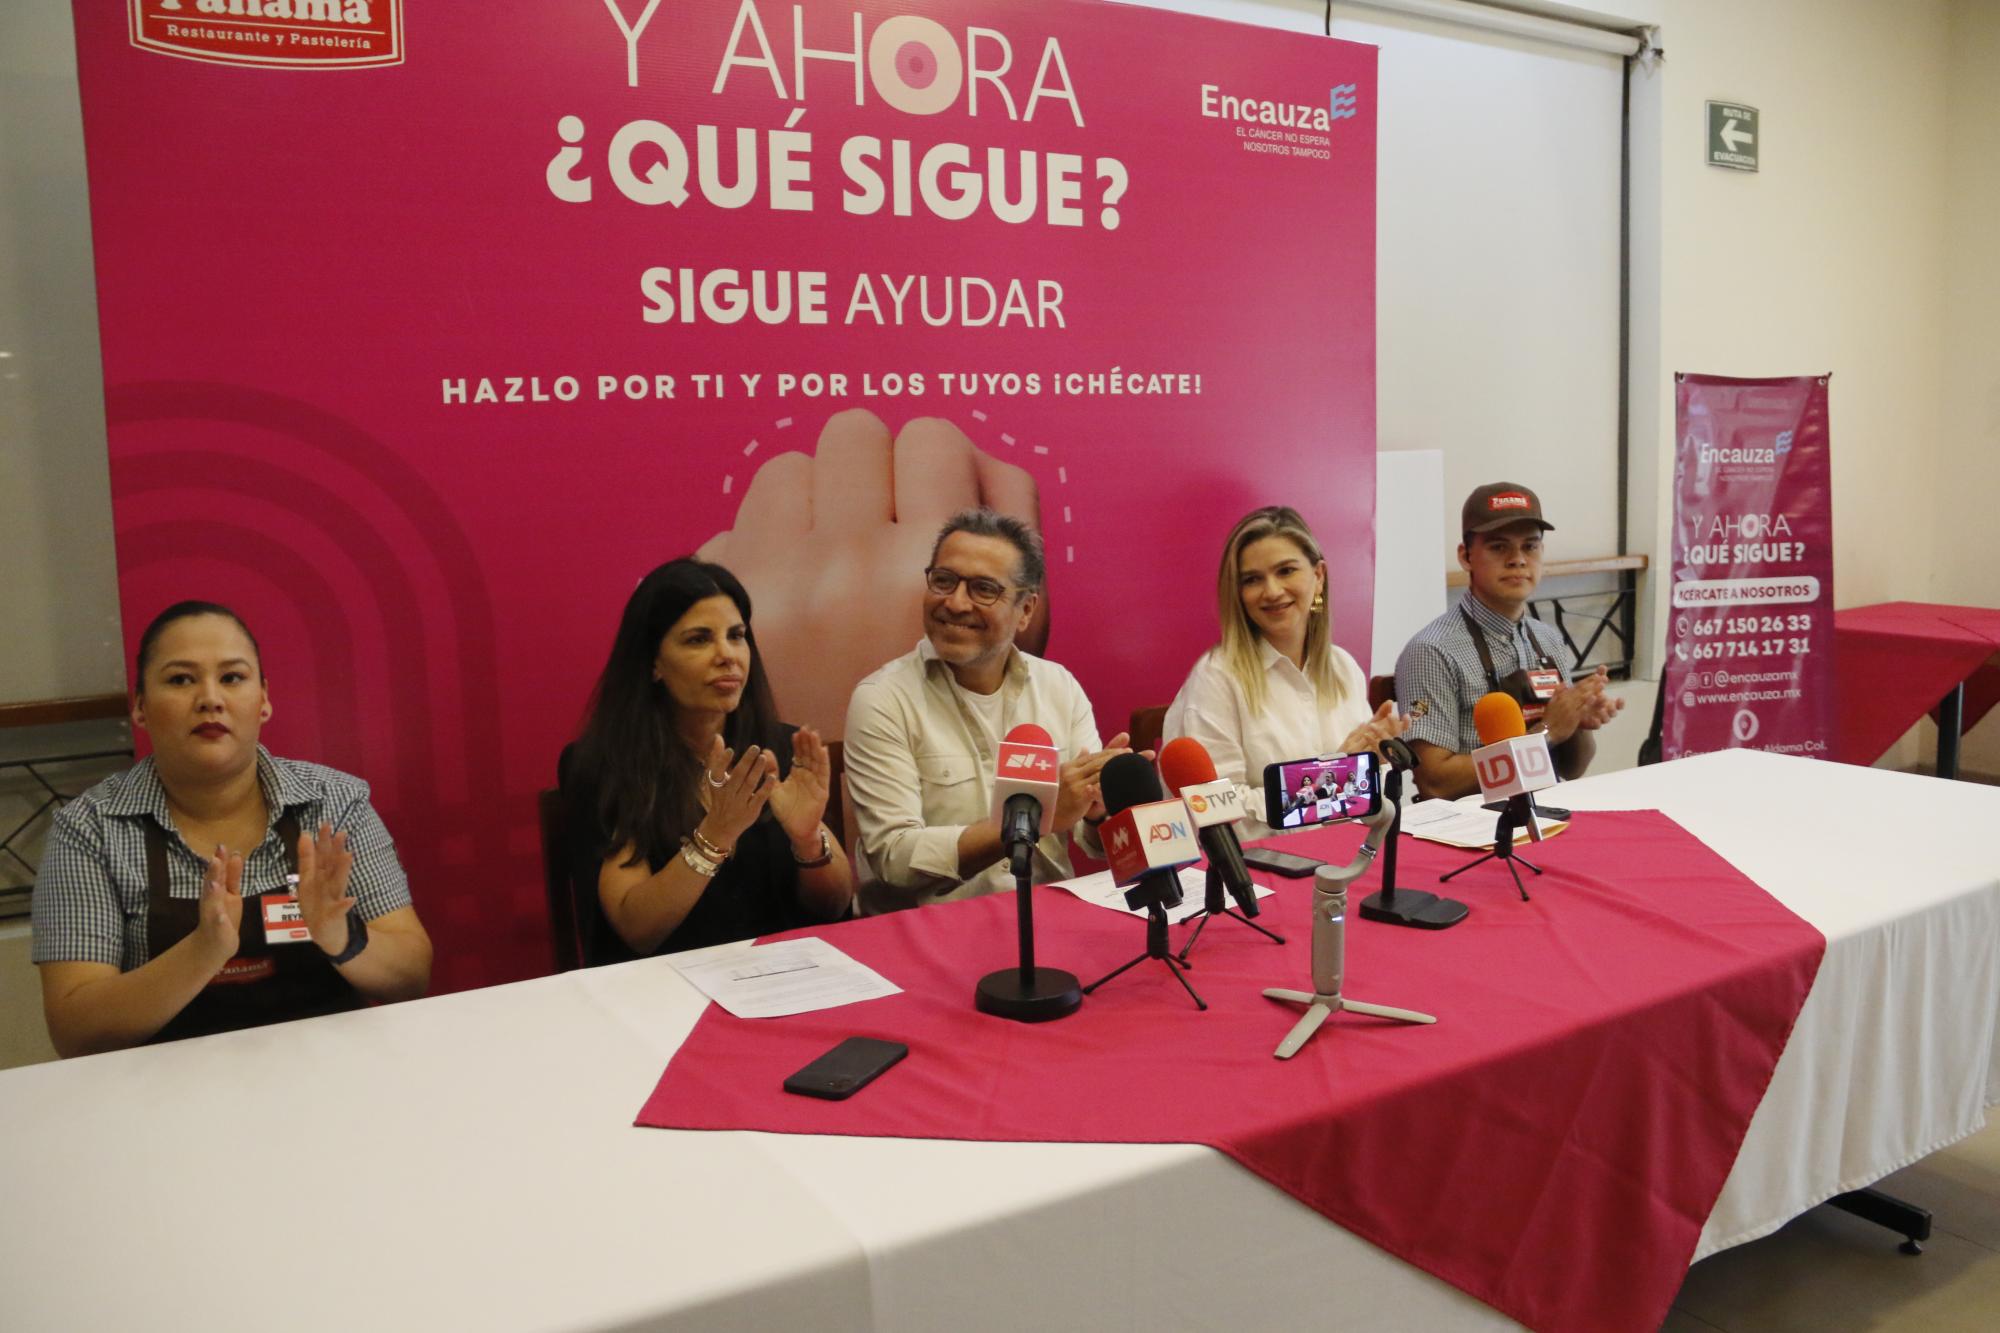 $!El evento lo presidieron Adriana Rojo Zazueta, Luis Osuna Vidaurri, Yajaira Camacho y representantes de la fuerza de ventas de Panamá.